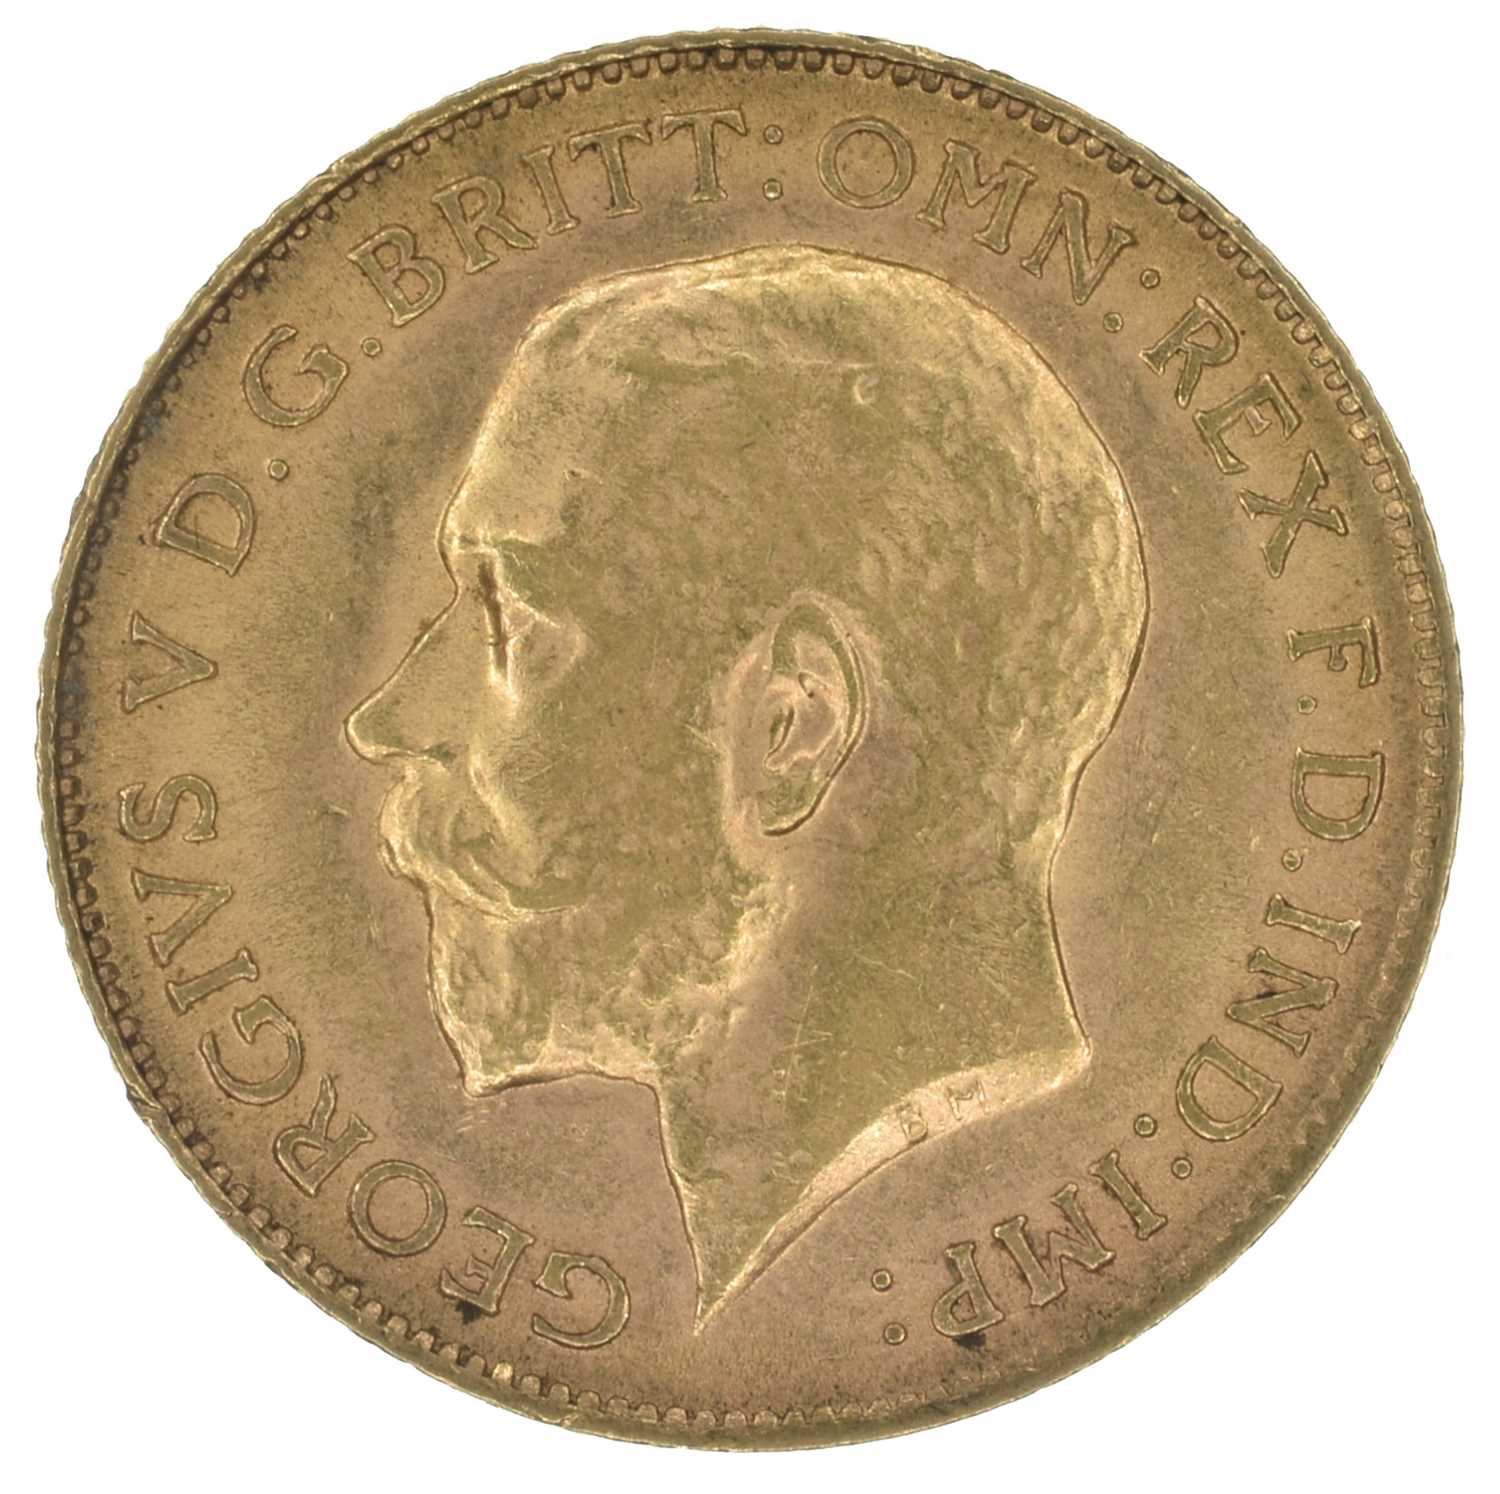 King George V, Half-Sovereign, 1913.